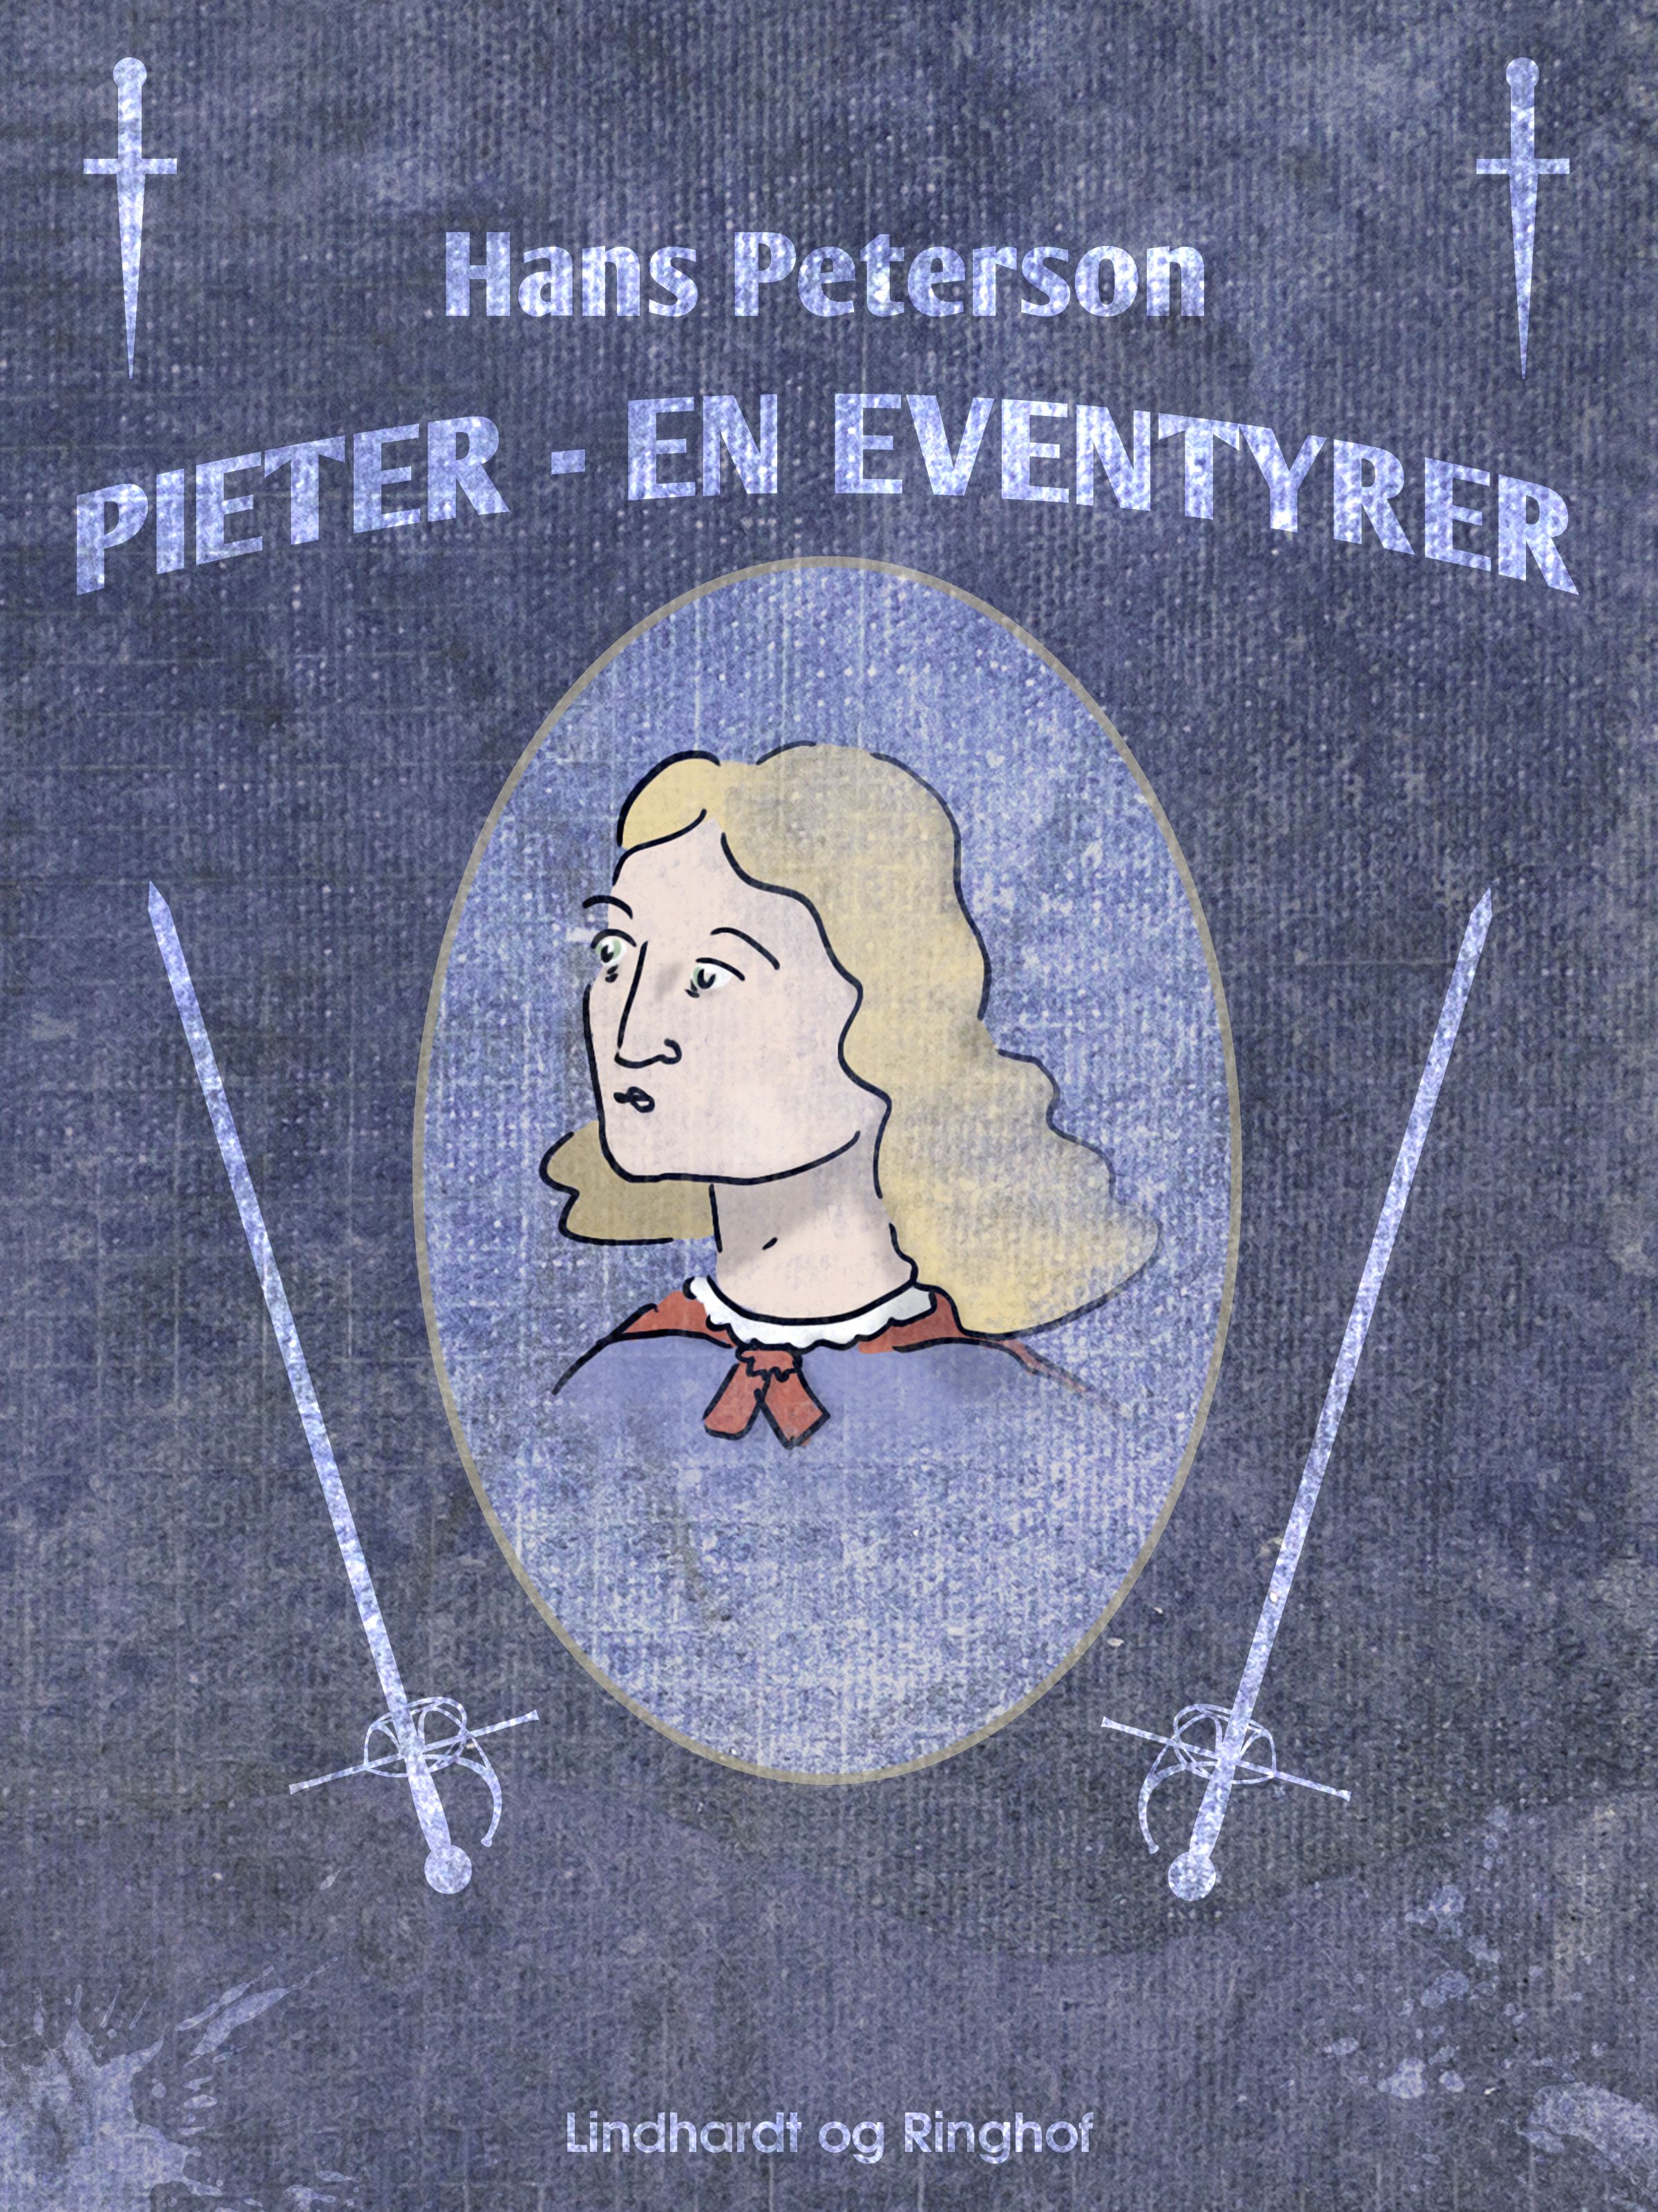 Pieter - en eventyrer, ljudbok av Hans Peterson